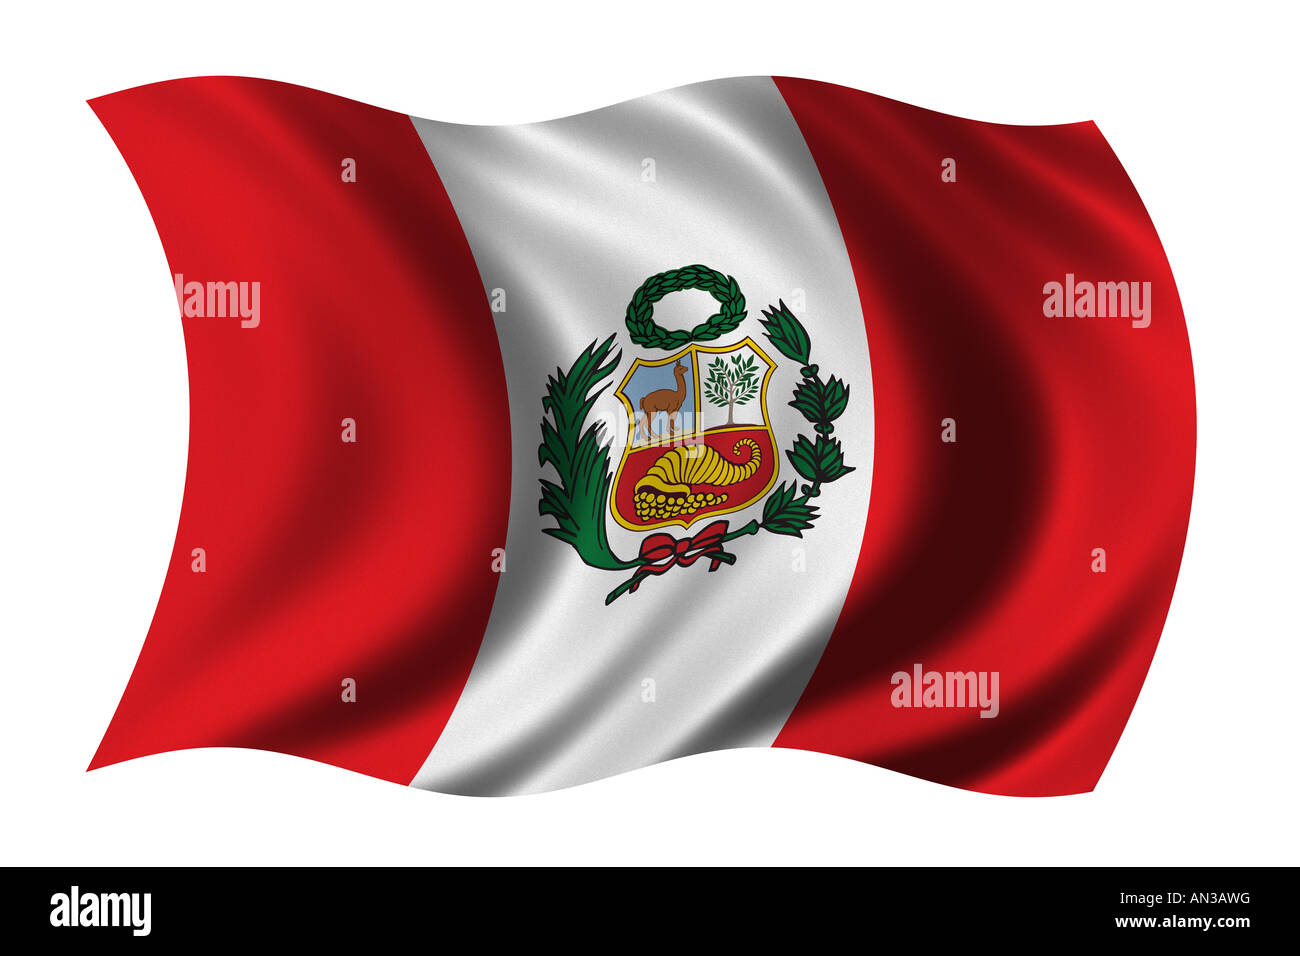 Brandissant le drapeau du Pérou dans le vent très haute résolution format natif pas de dimensionnement de Banque D'Images